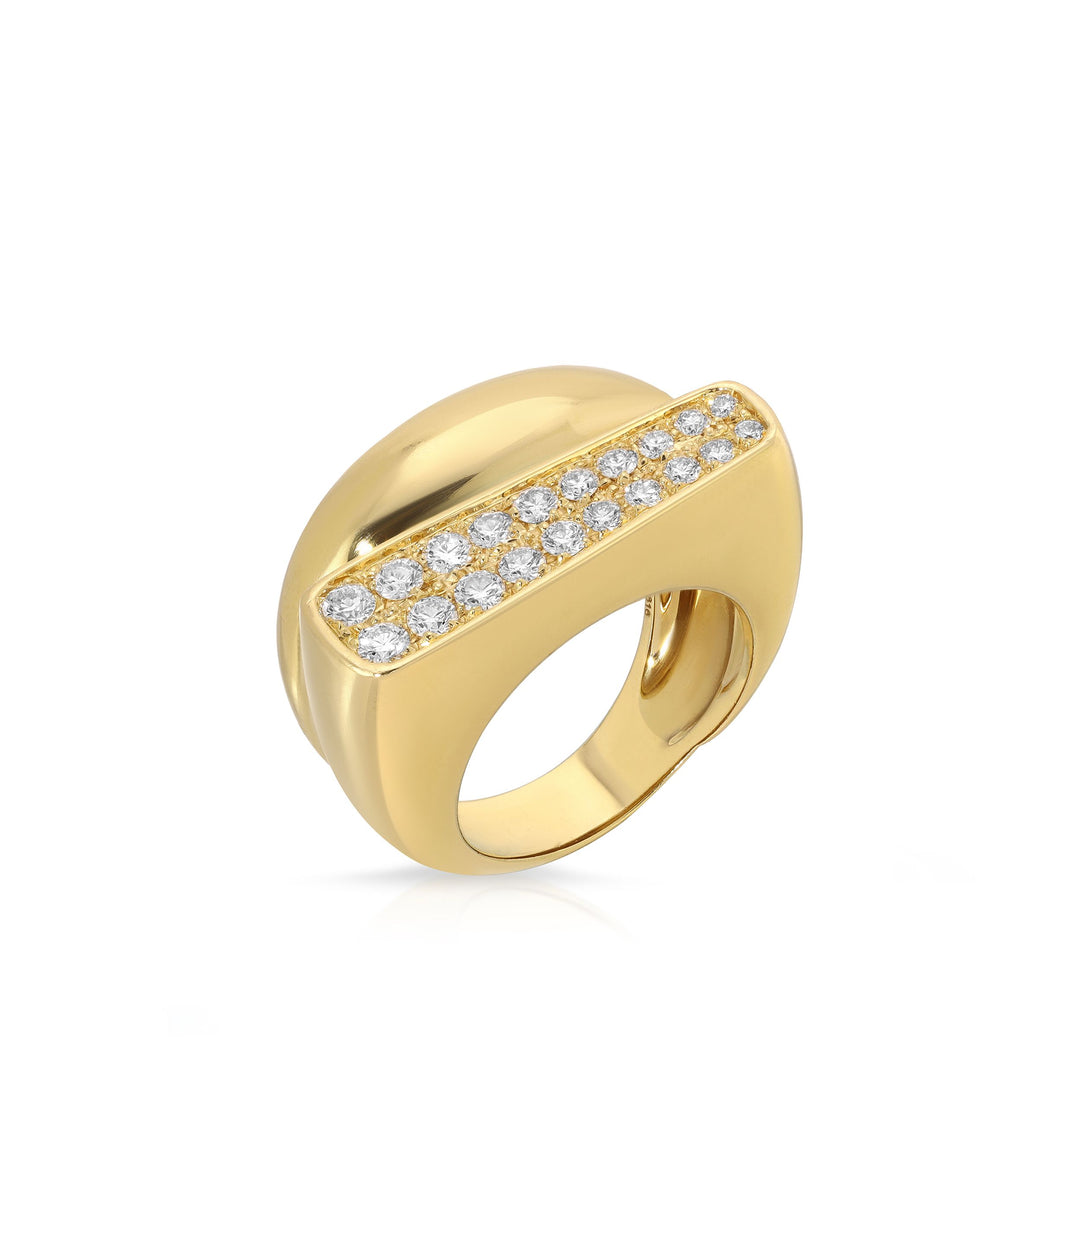 Art Moderne Diamond Ring in 18K Gold